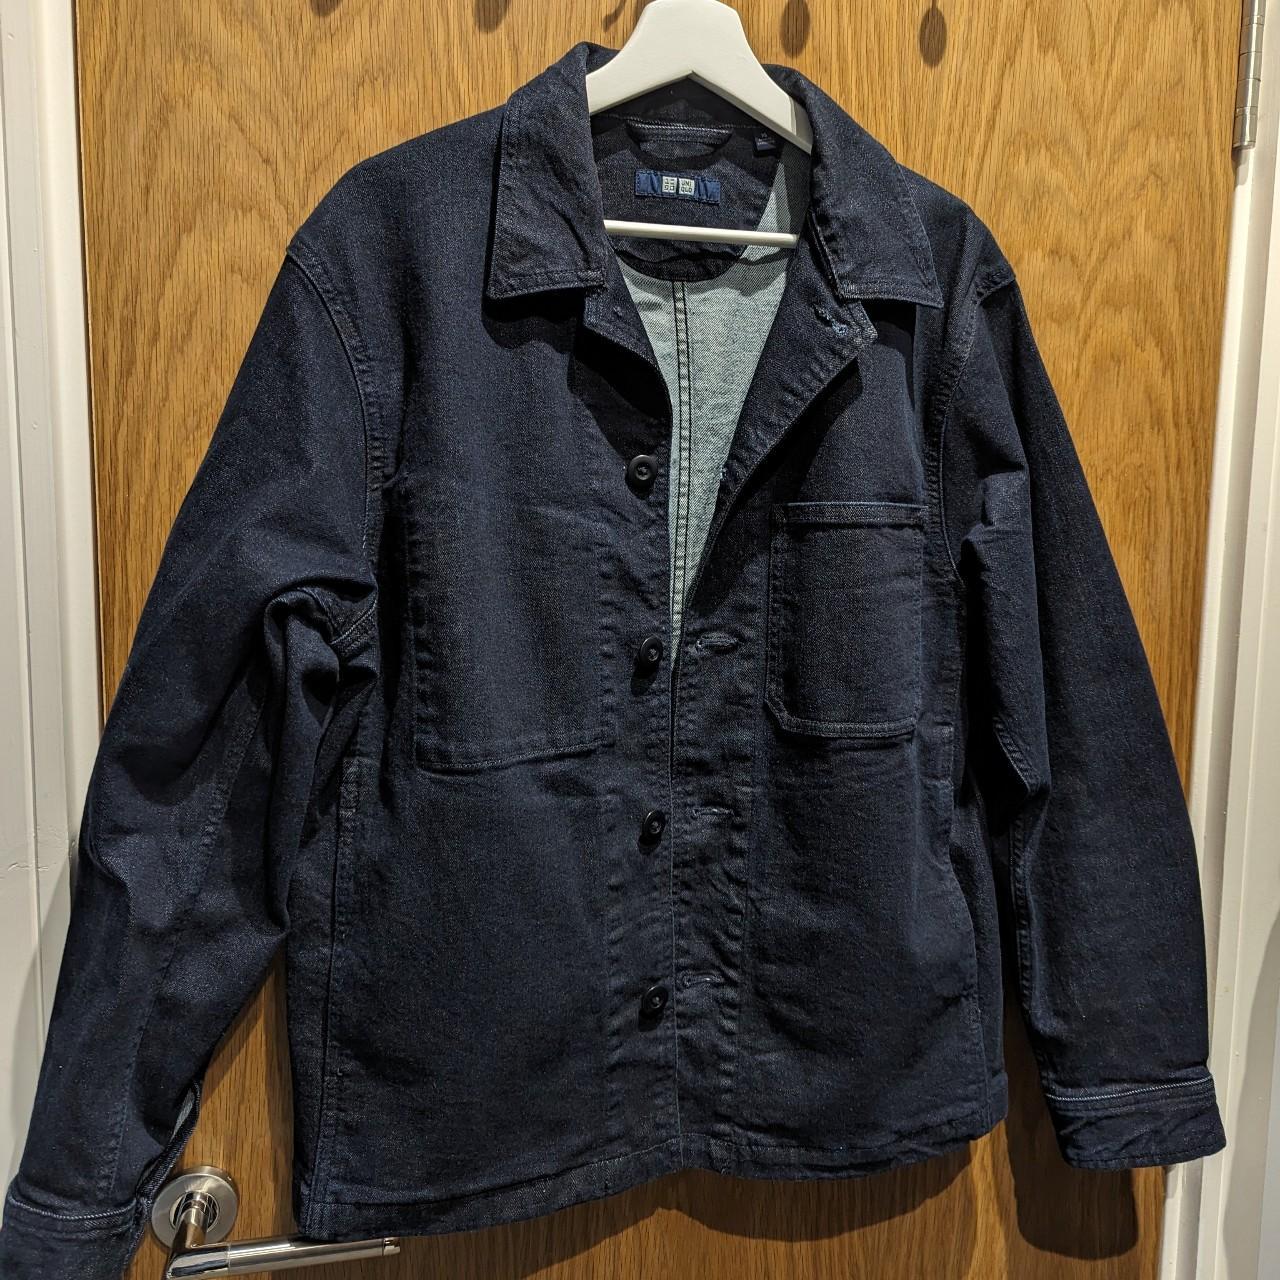 Uniqlo men's denim chore jacket, size XS (fits a... - Depop